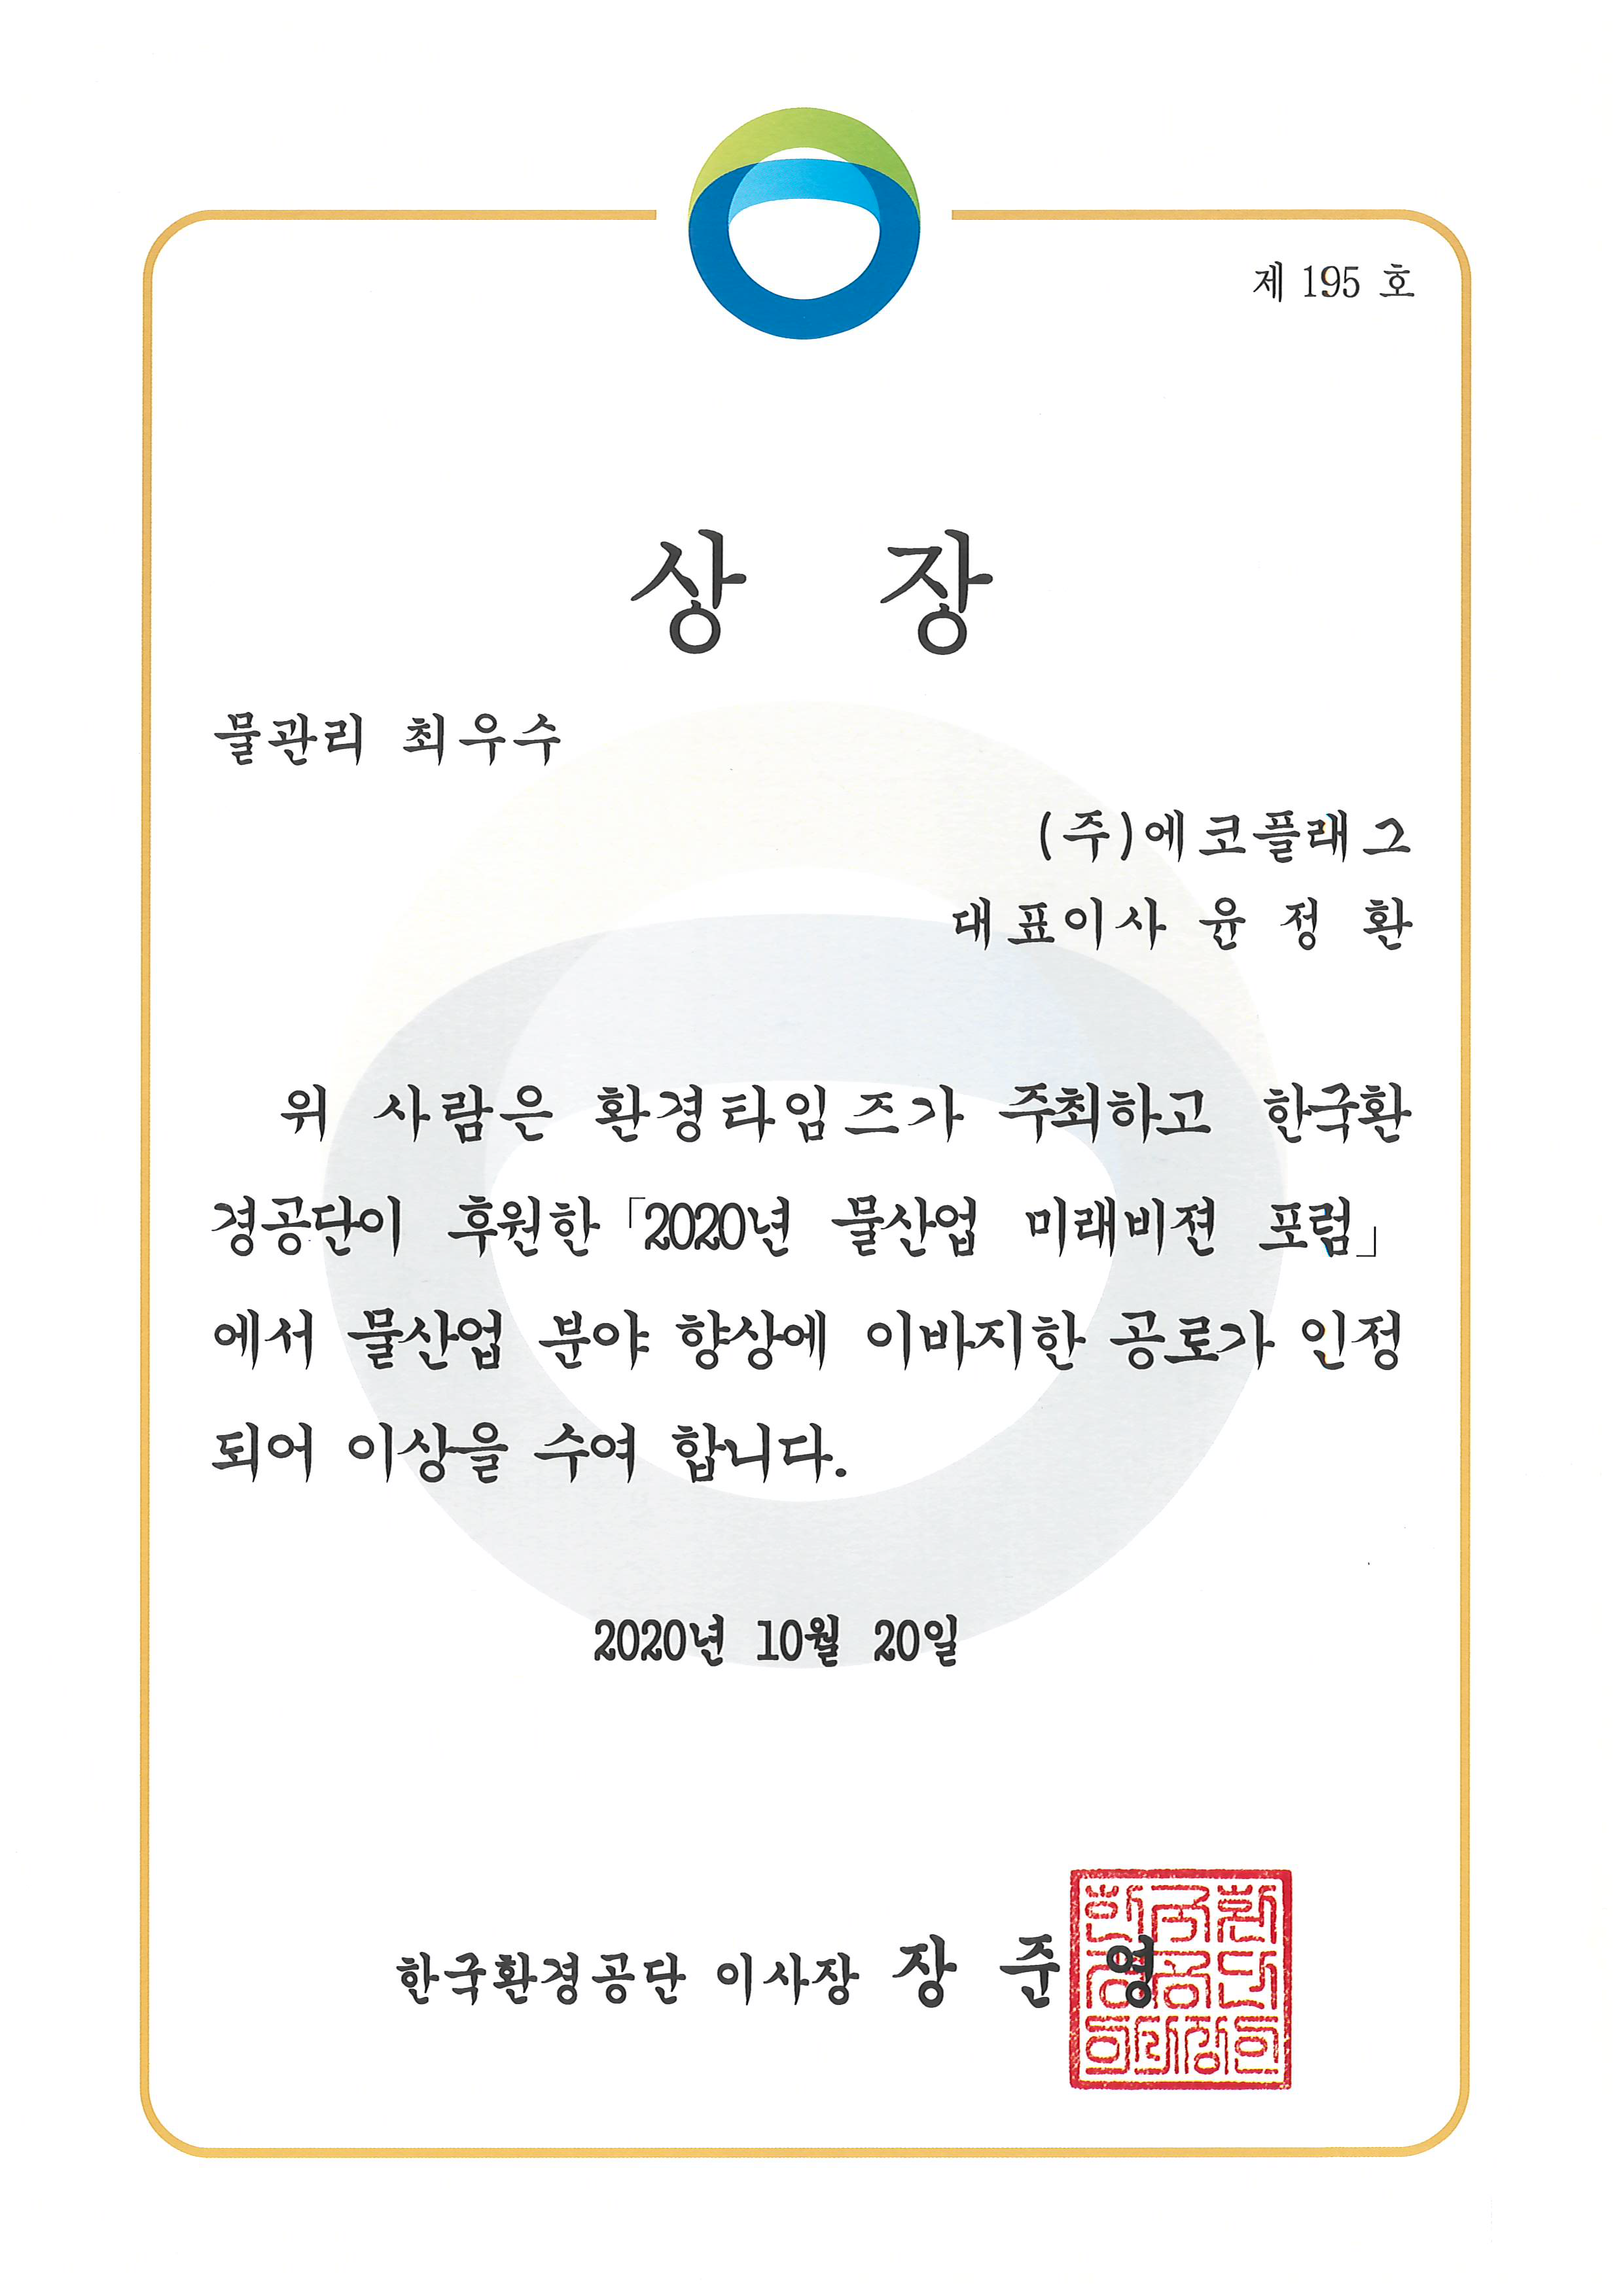 한국환경공단 물관리 최우수 상장